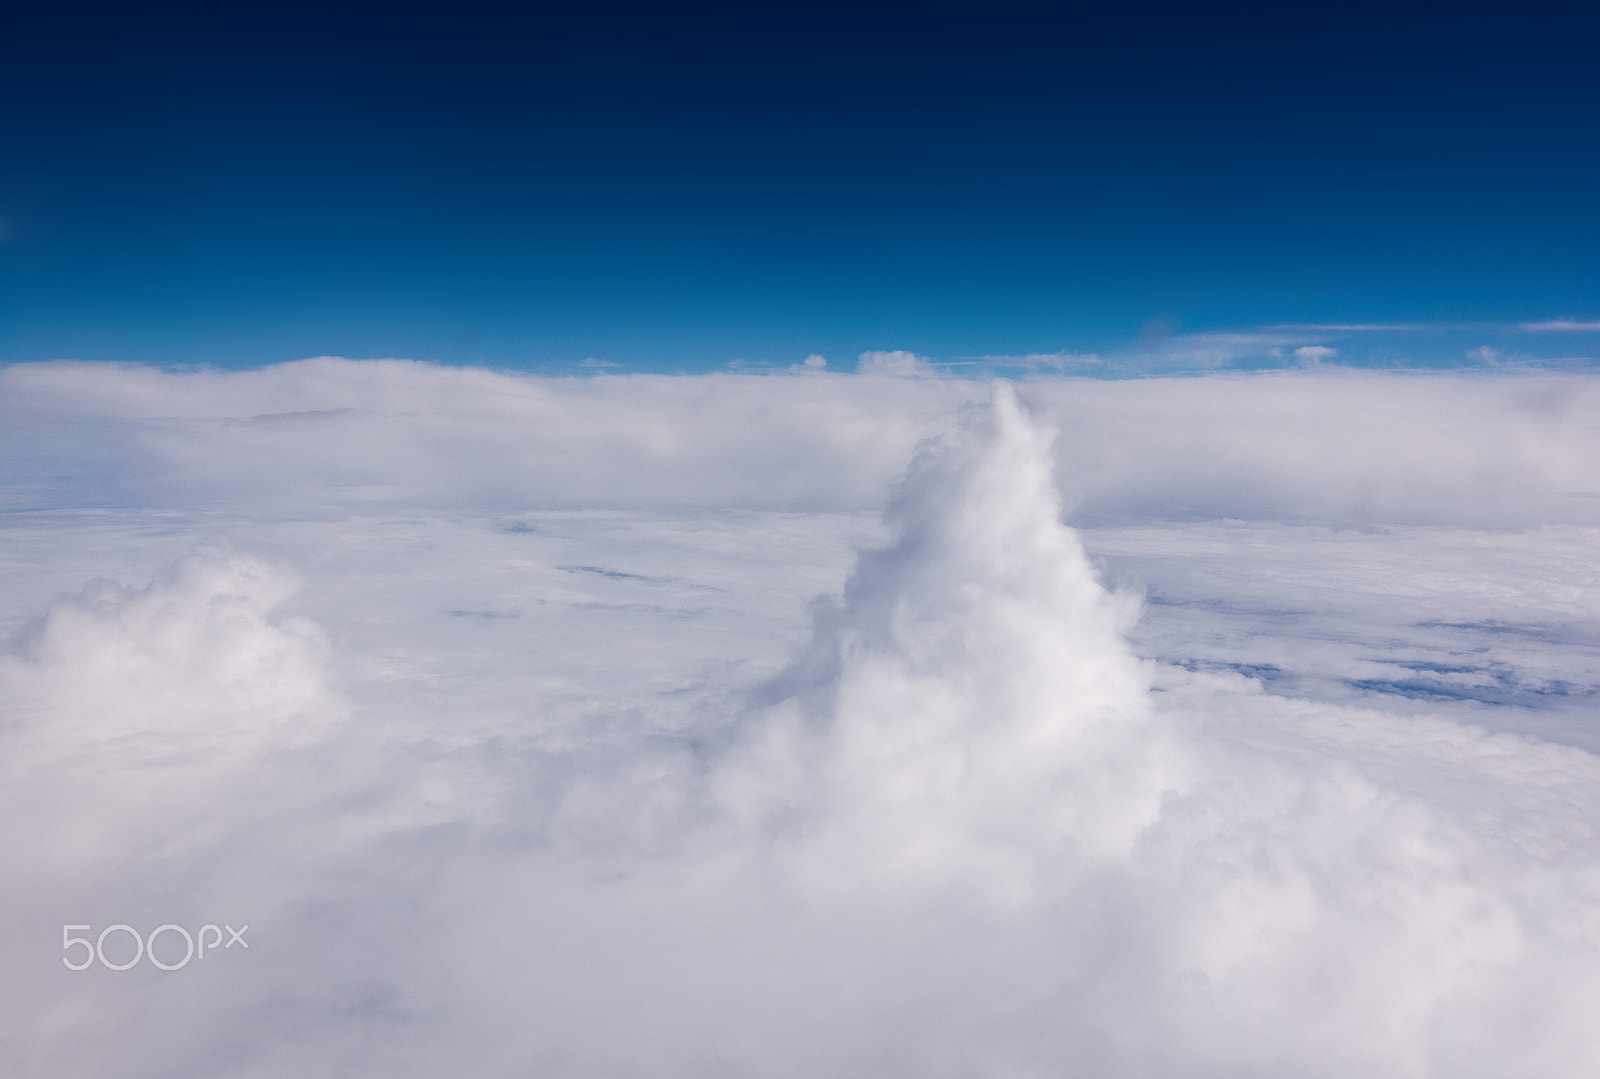 AF Zoom-Nikkor 80-200mm f/4.5-5.6D sample photo. Aerial high clouds photography